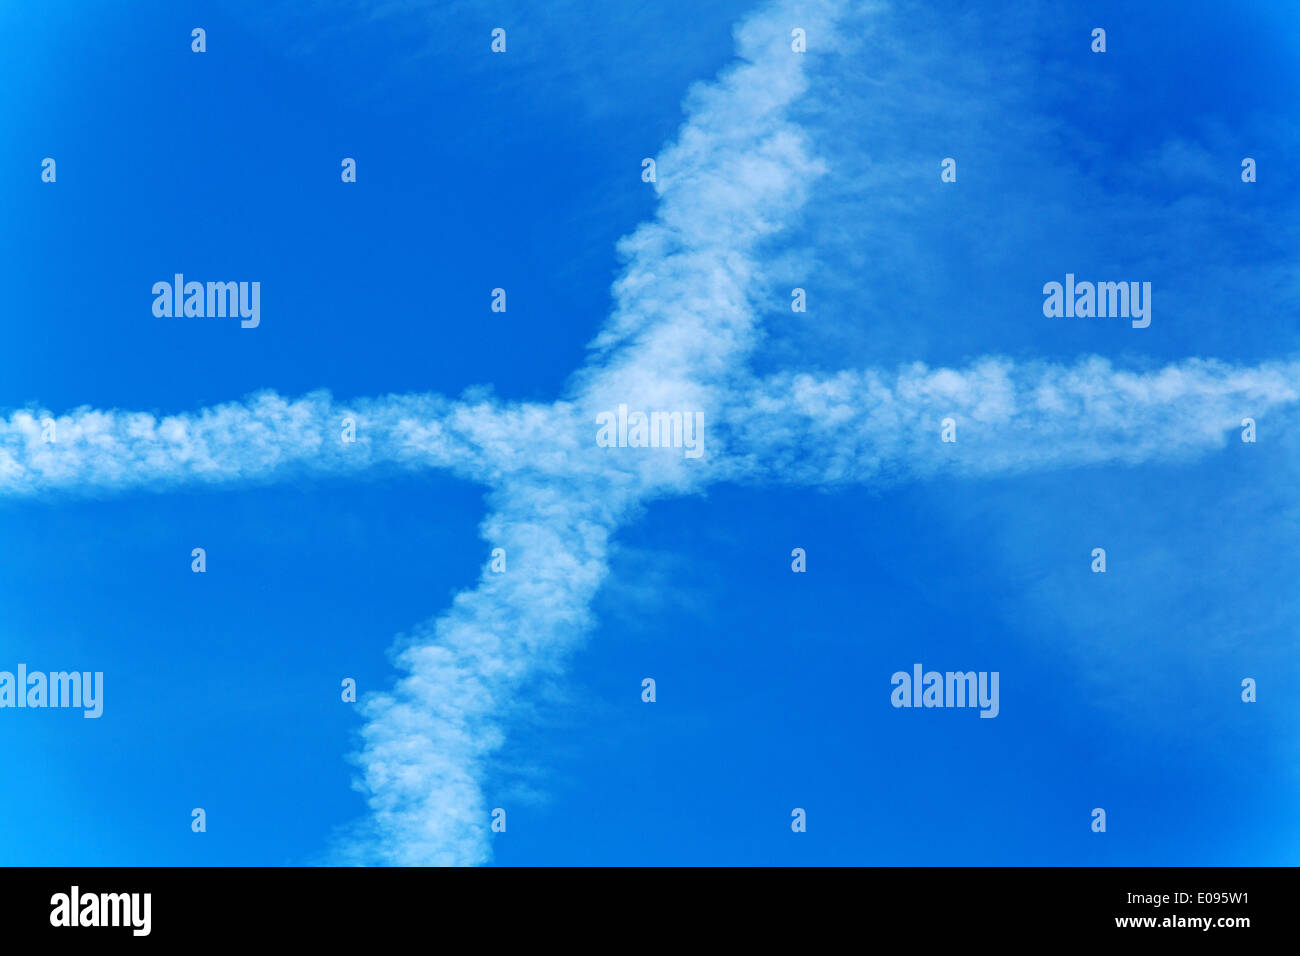 Kondensstreifen von Flugzeugen vor blauem Himmel. Schadstoffe und CO2-Ausstoß von Flugzeugen, Kondensstreifen von Flugzeugen Vor bla Stockfoto